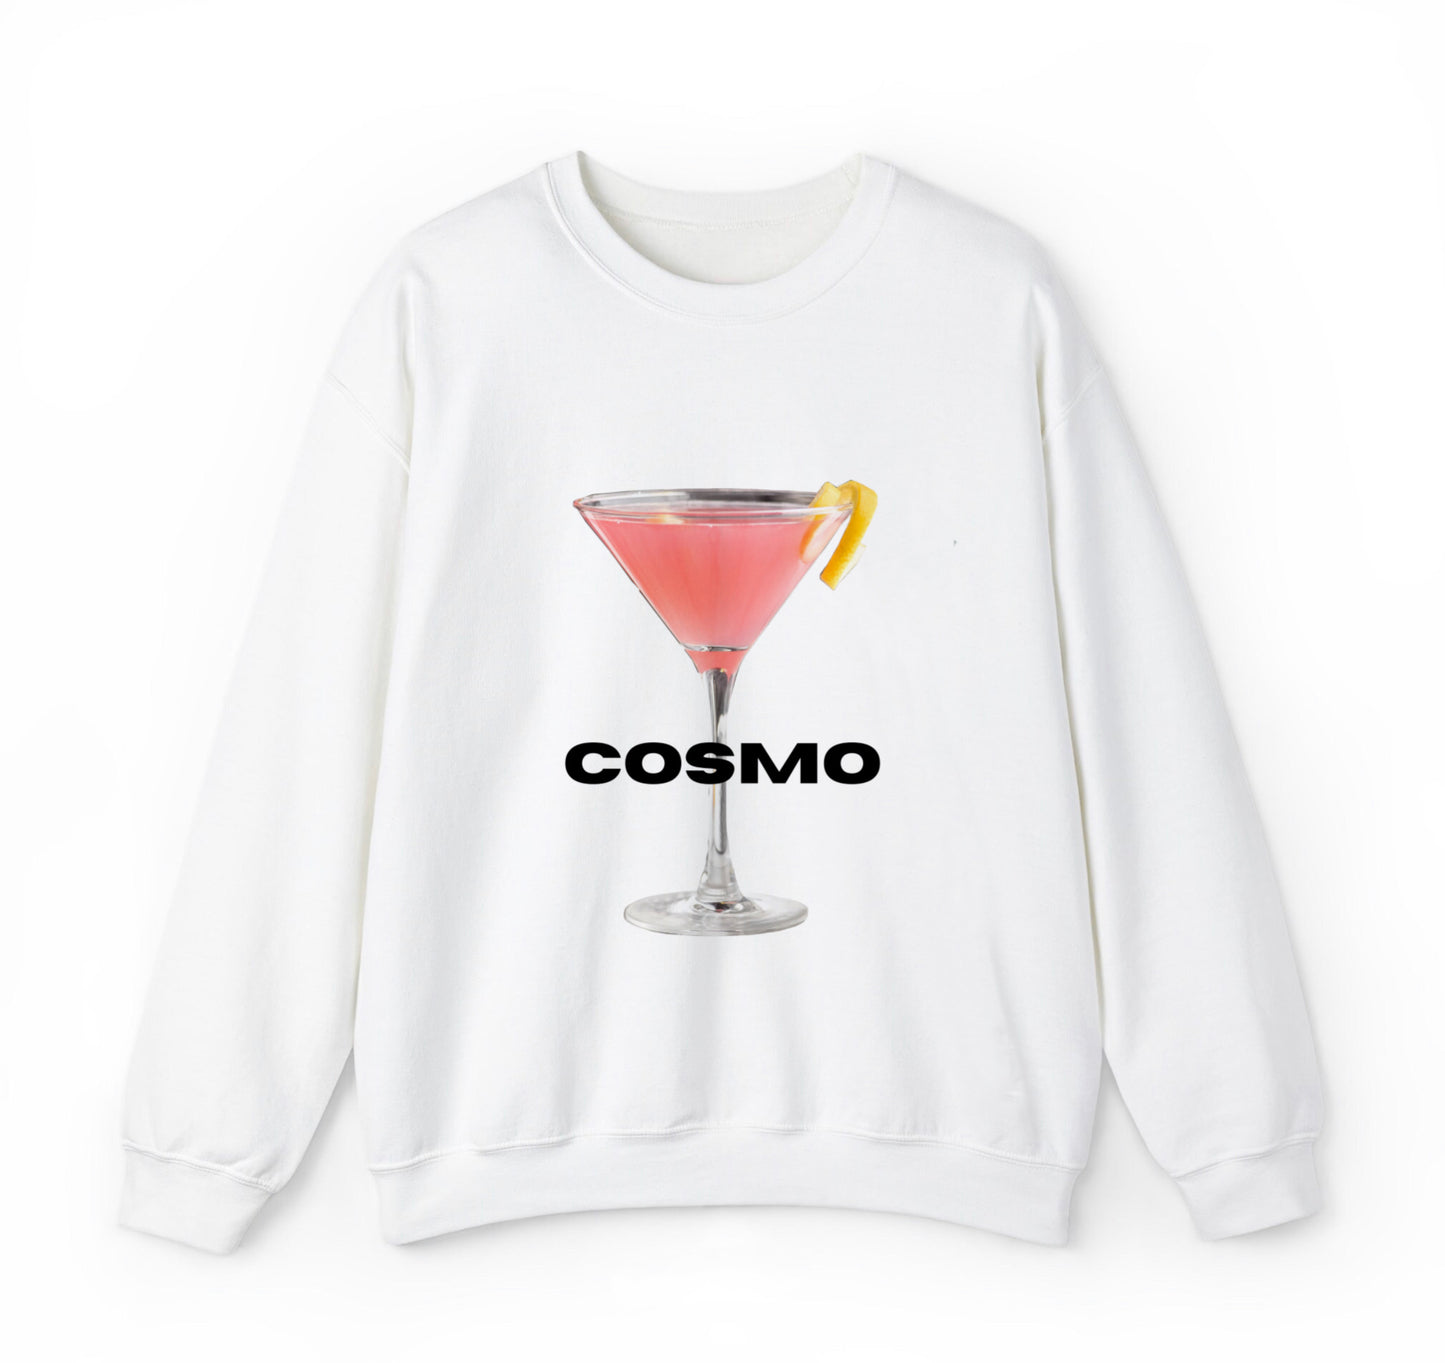 Cosmo Sweatshirt